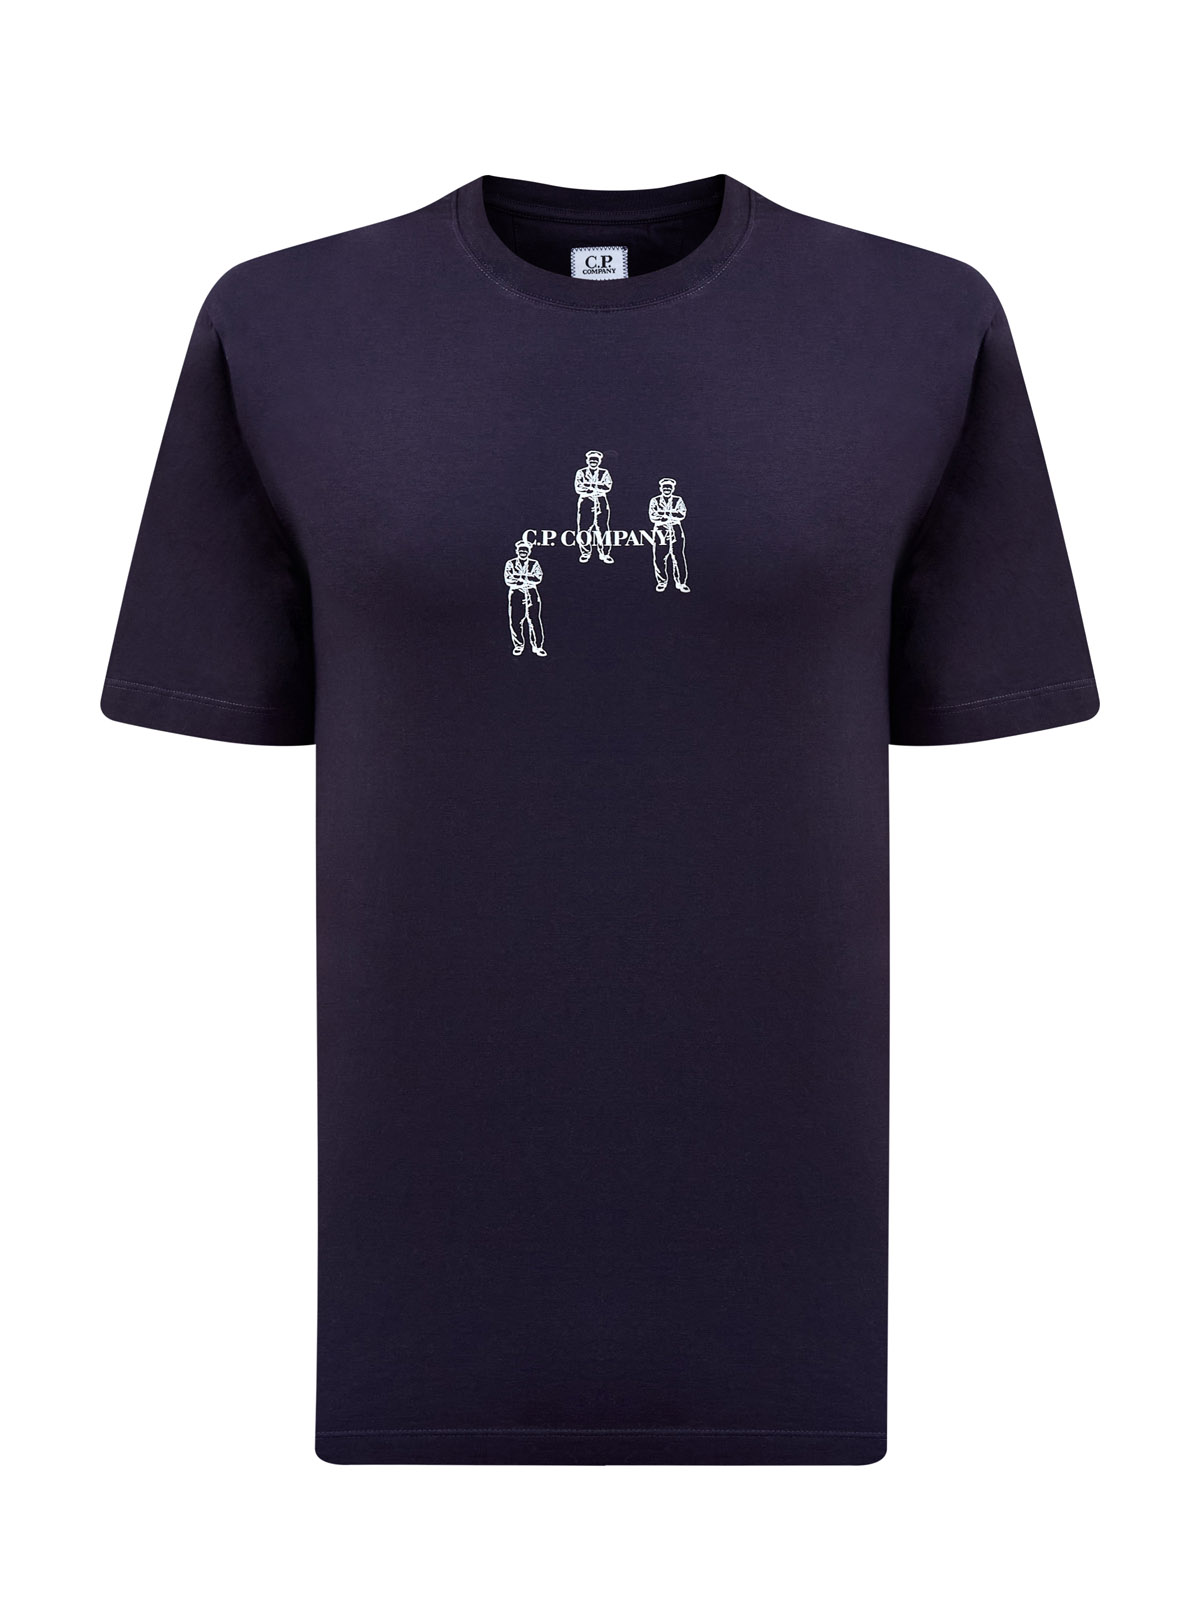 

Хлопковая футболка из гладкого джерси с контрастным принтом, Черный, Хлопковая футболка из гладкого джерси с контрастным принтом